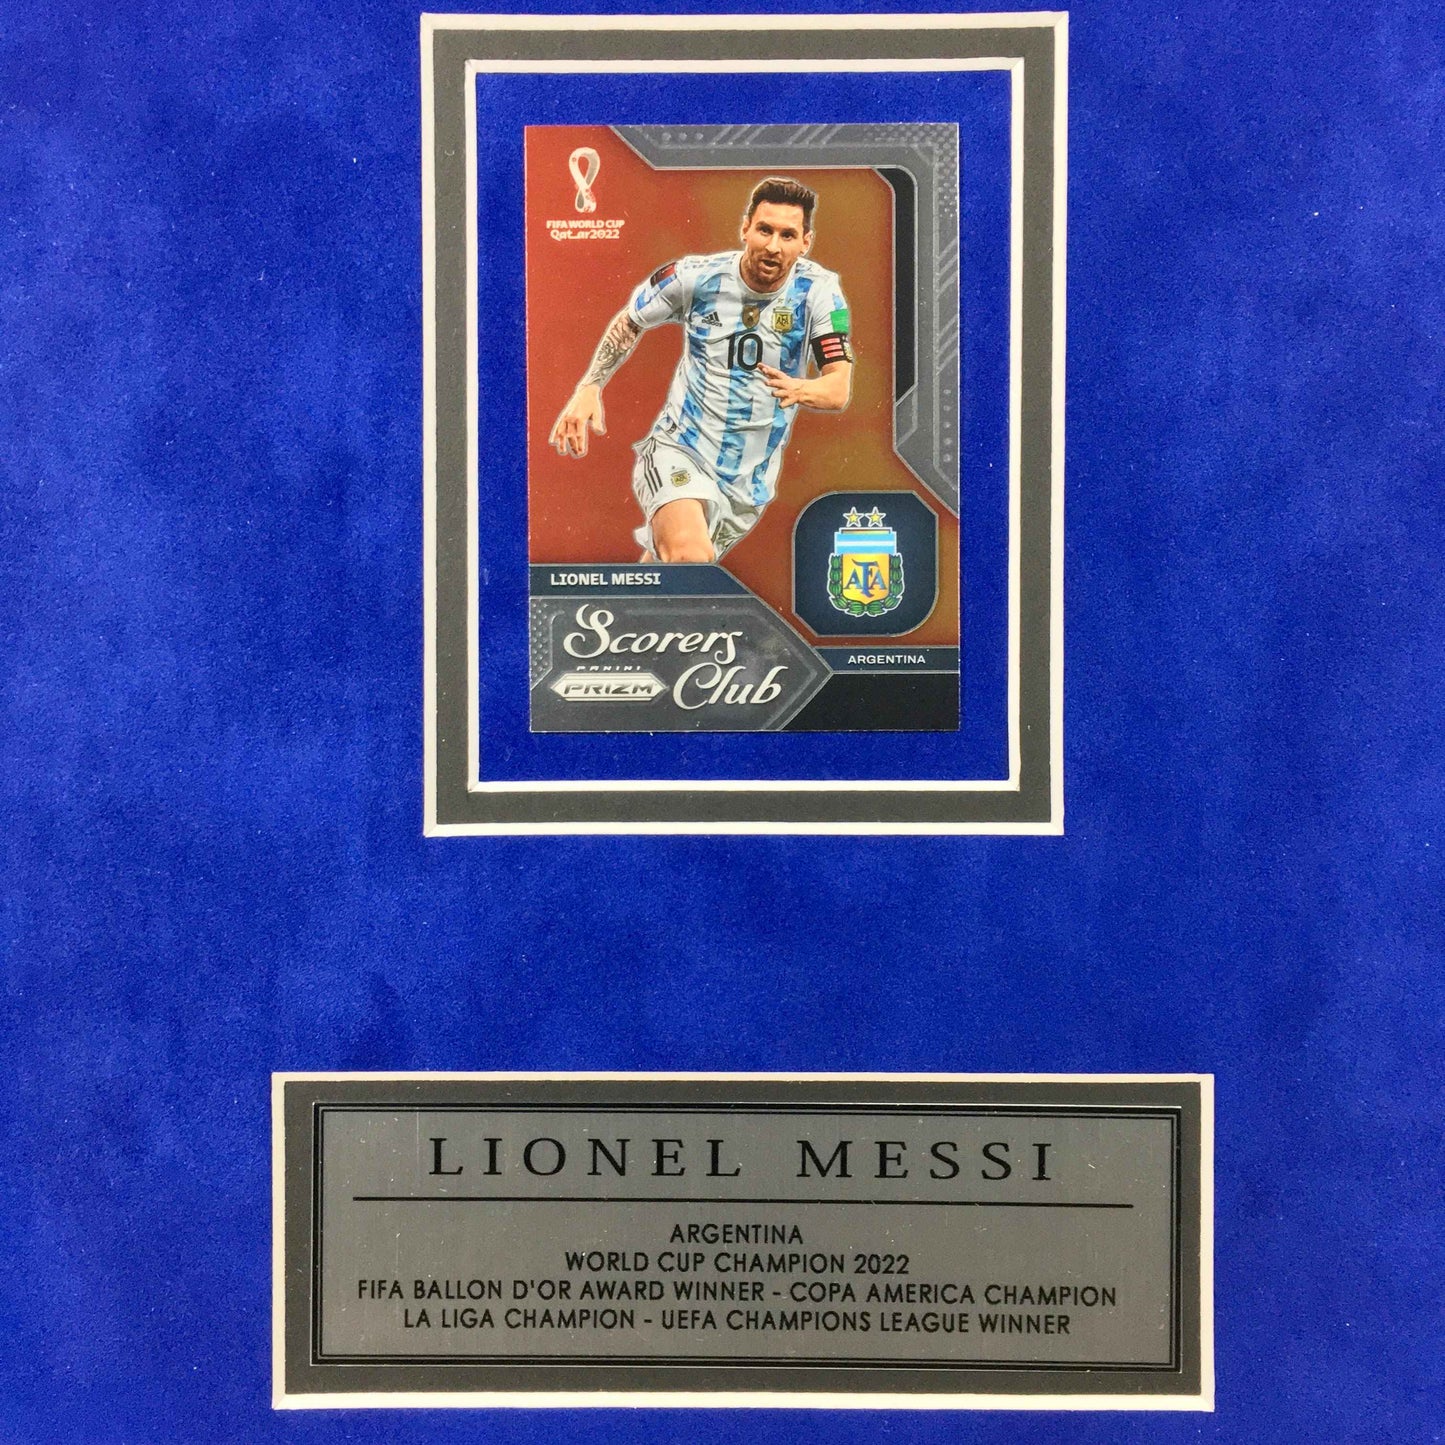 Lionel Messi Signed Jersey Framed